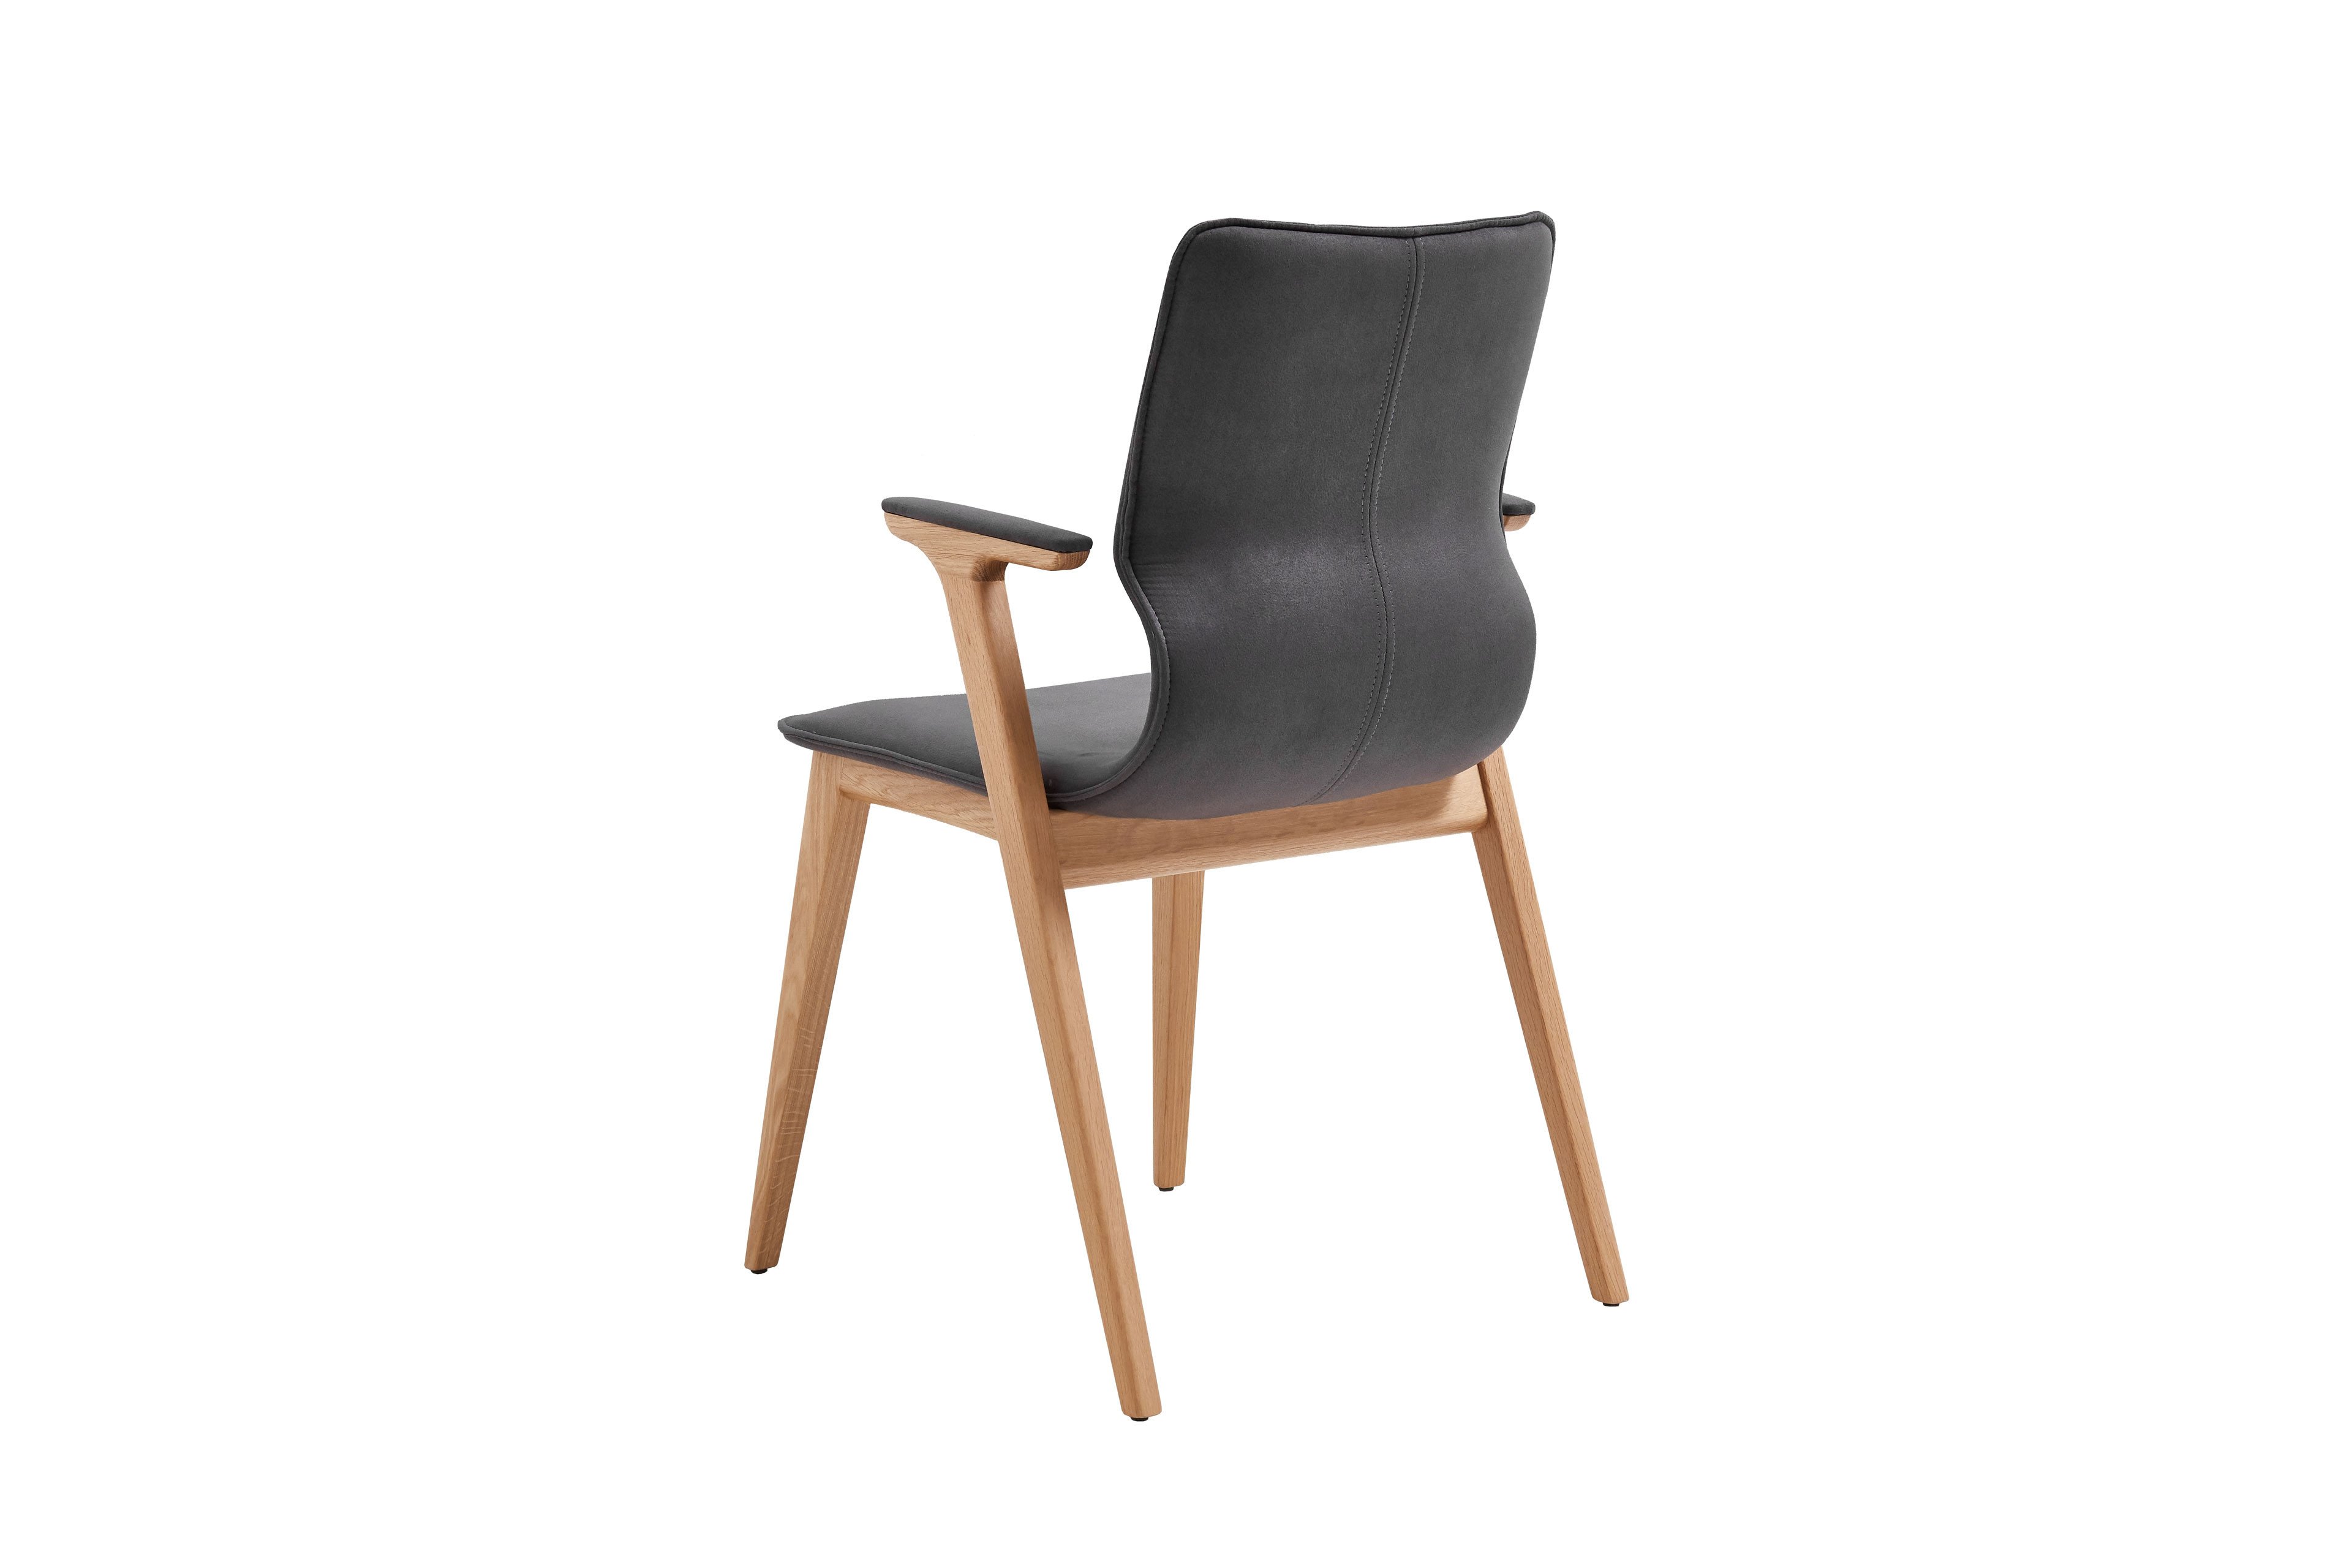 Stuhl Ancona von witlake in Braun | Möbel Letz - Ihr Online-Shop